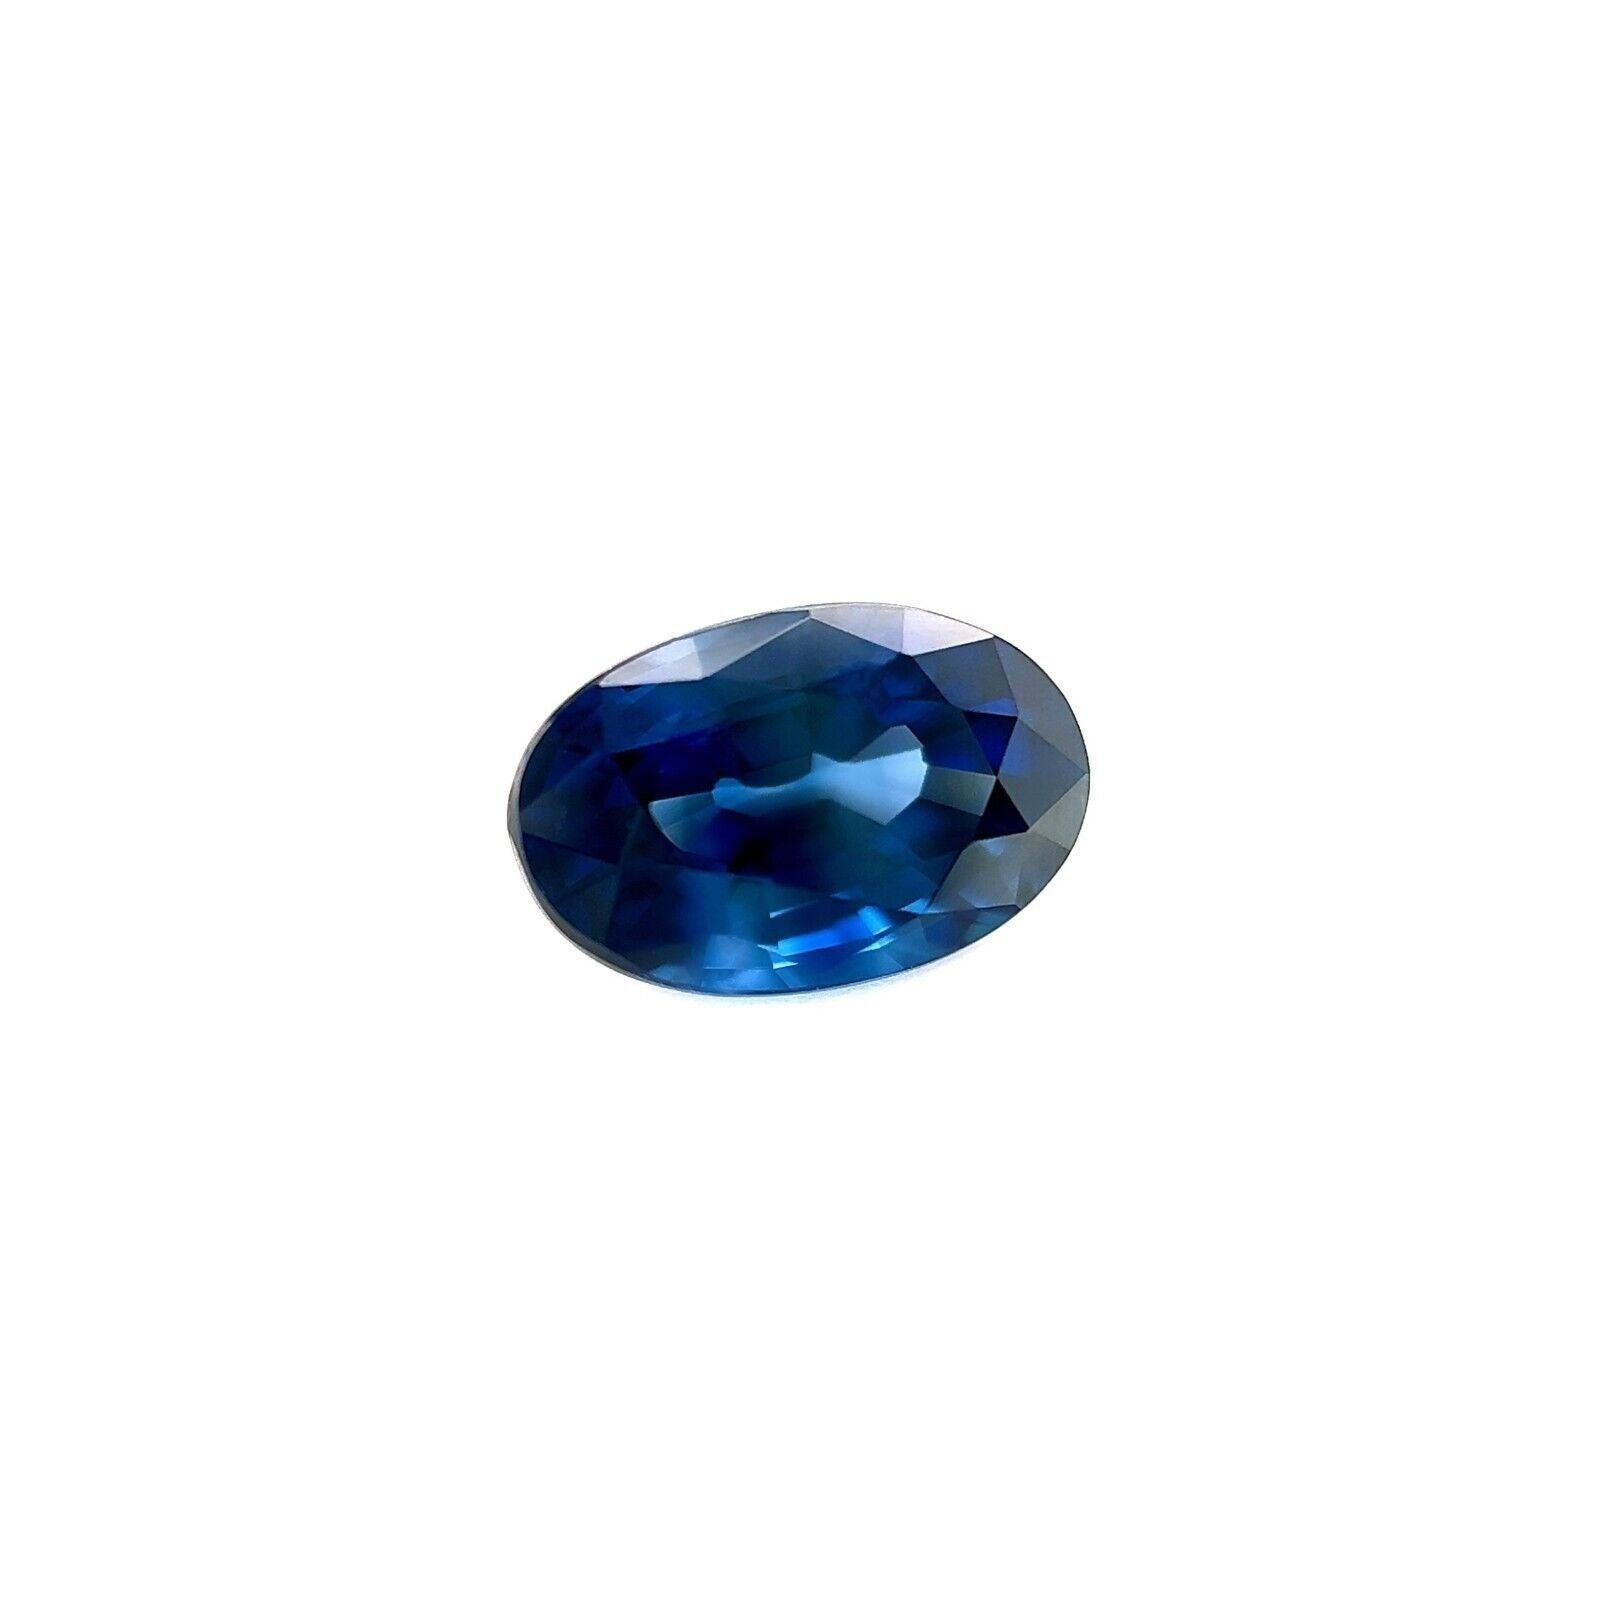 Saphir de Ceylan bleu roi taille ovale 1,56 carat, pierre naturelle de 8 x 5,3 mm VS

Saphir de Ceylan naturel d'un bleu royal profond.
1,56 carat, d'une belle et profonde couleur bleu royal et d'une excellente clarté. VS.
Il présente également une